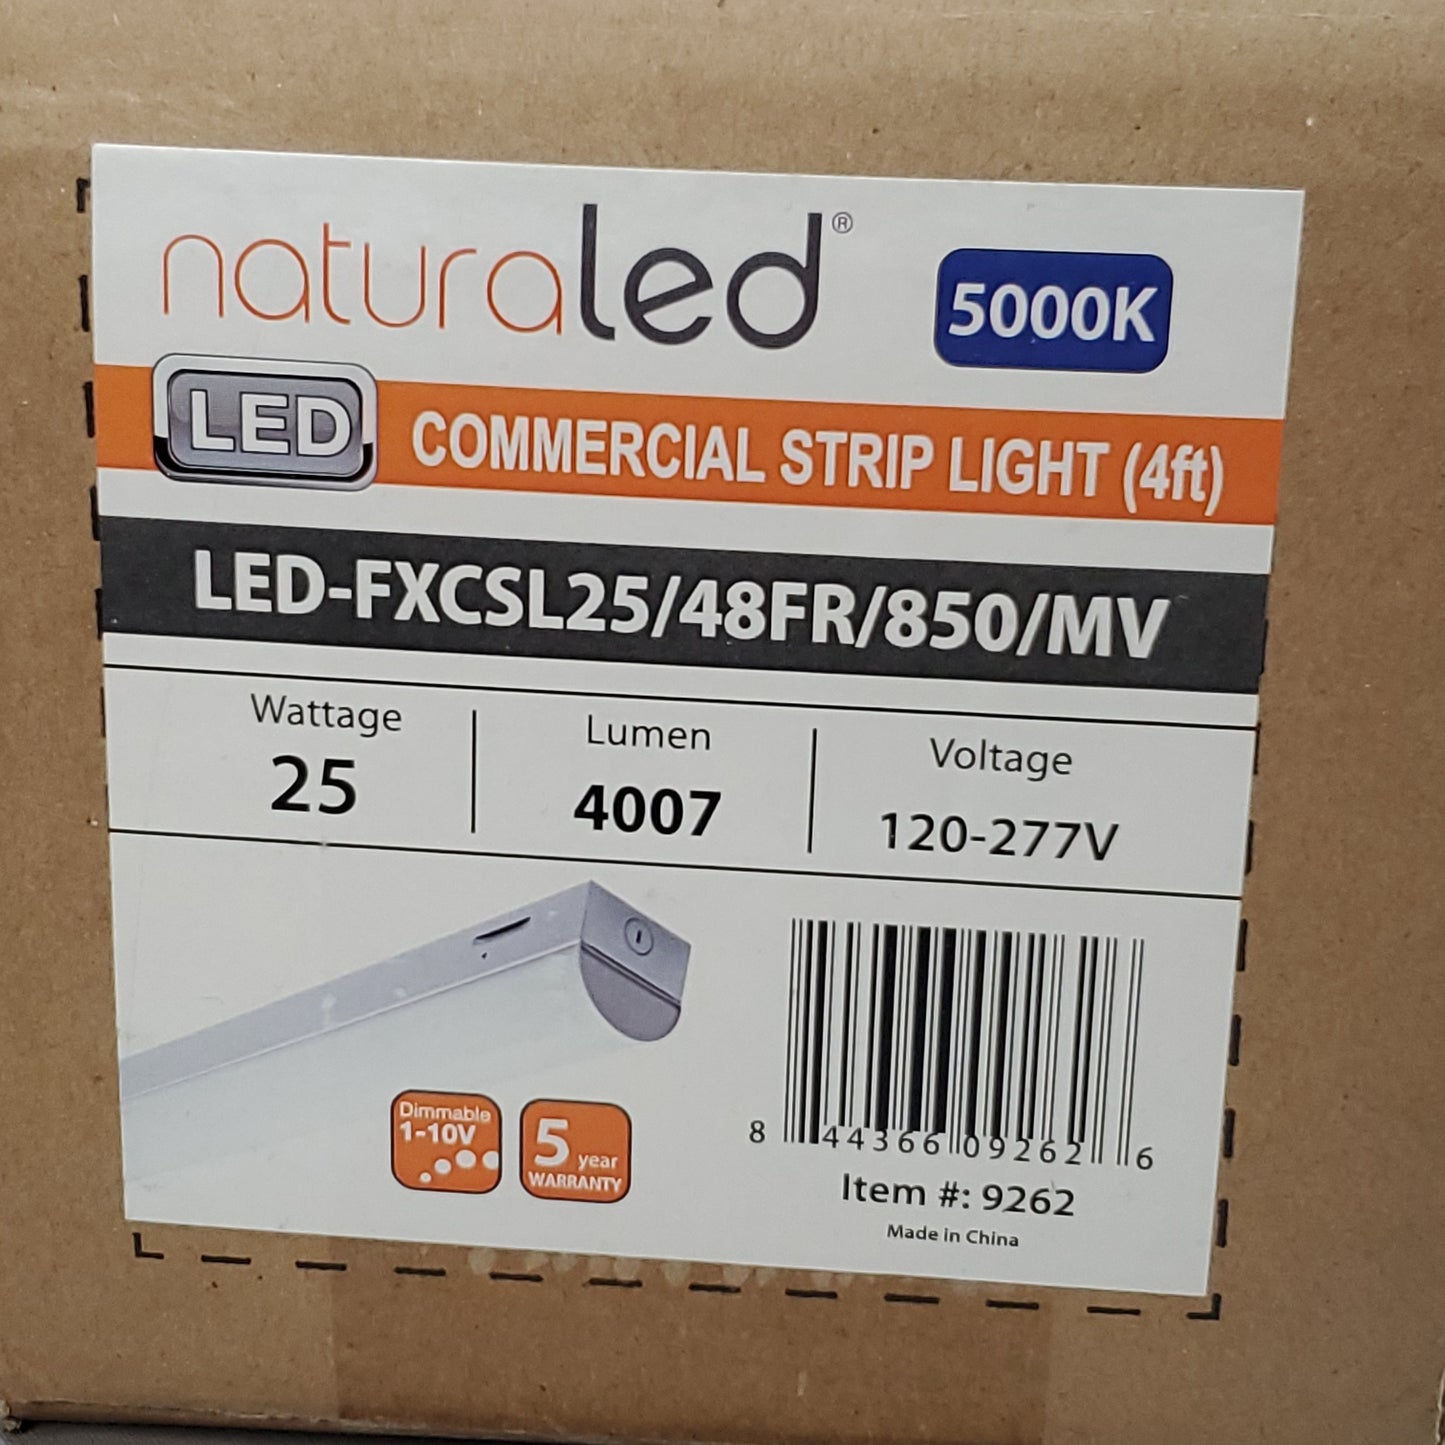 NATURALED Commercial LED Strip Light 4FT 25W 4007lm 5000K Voltage 120-277V 9262 (New)